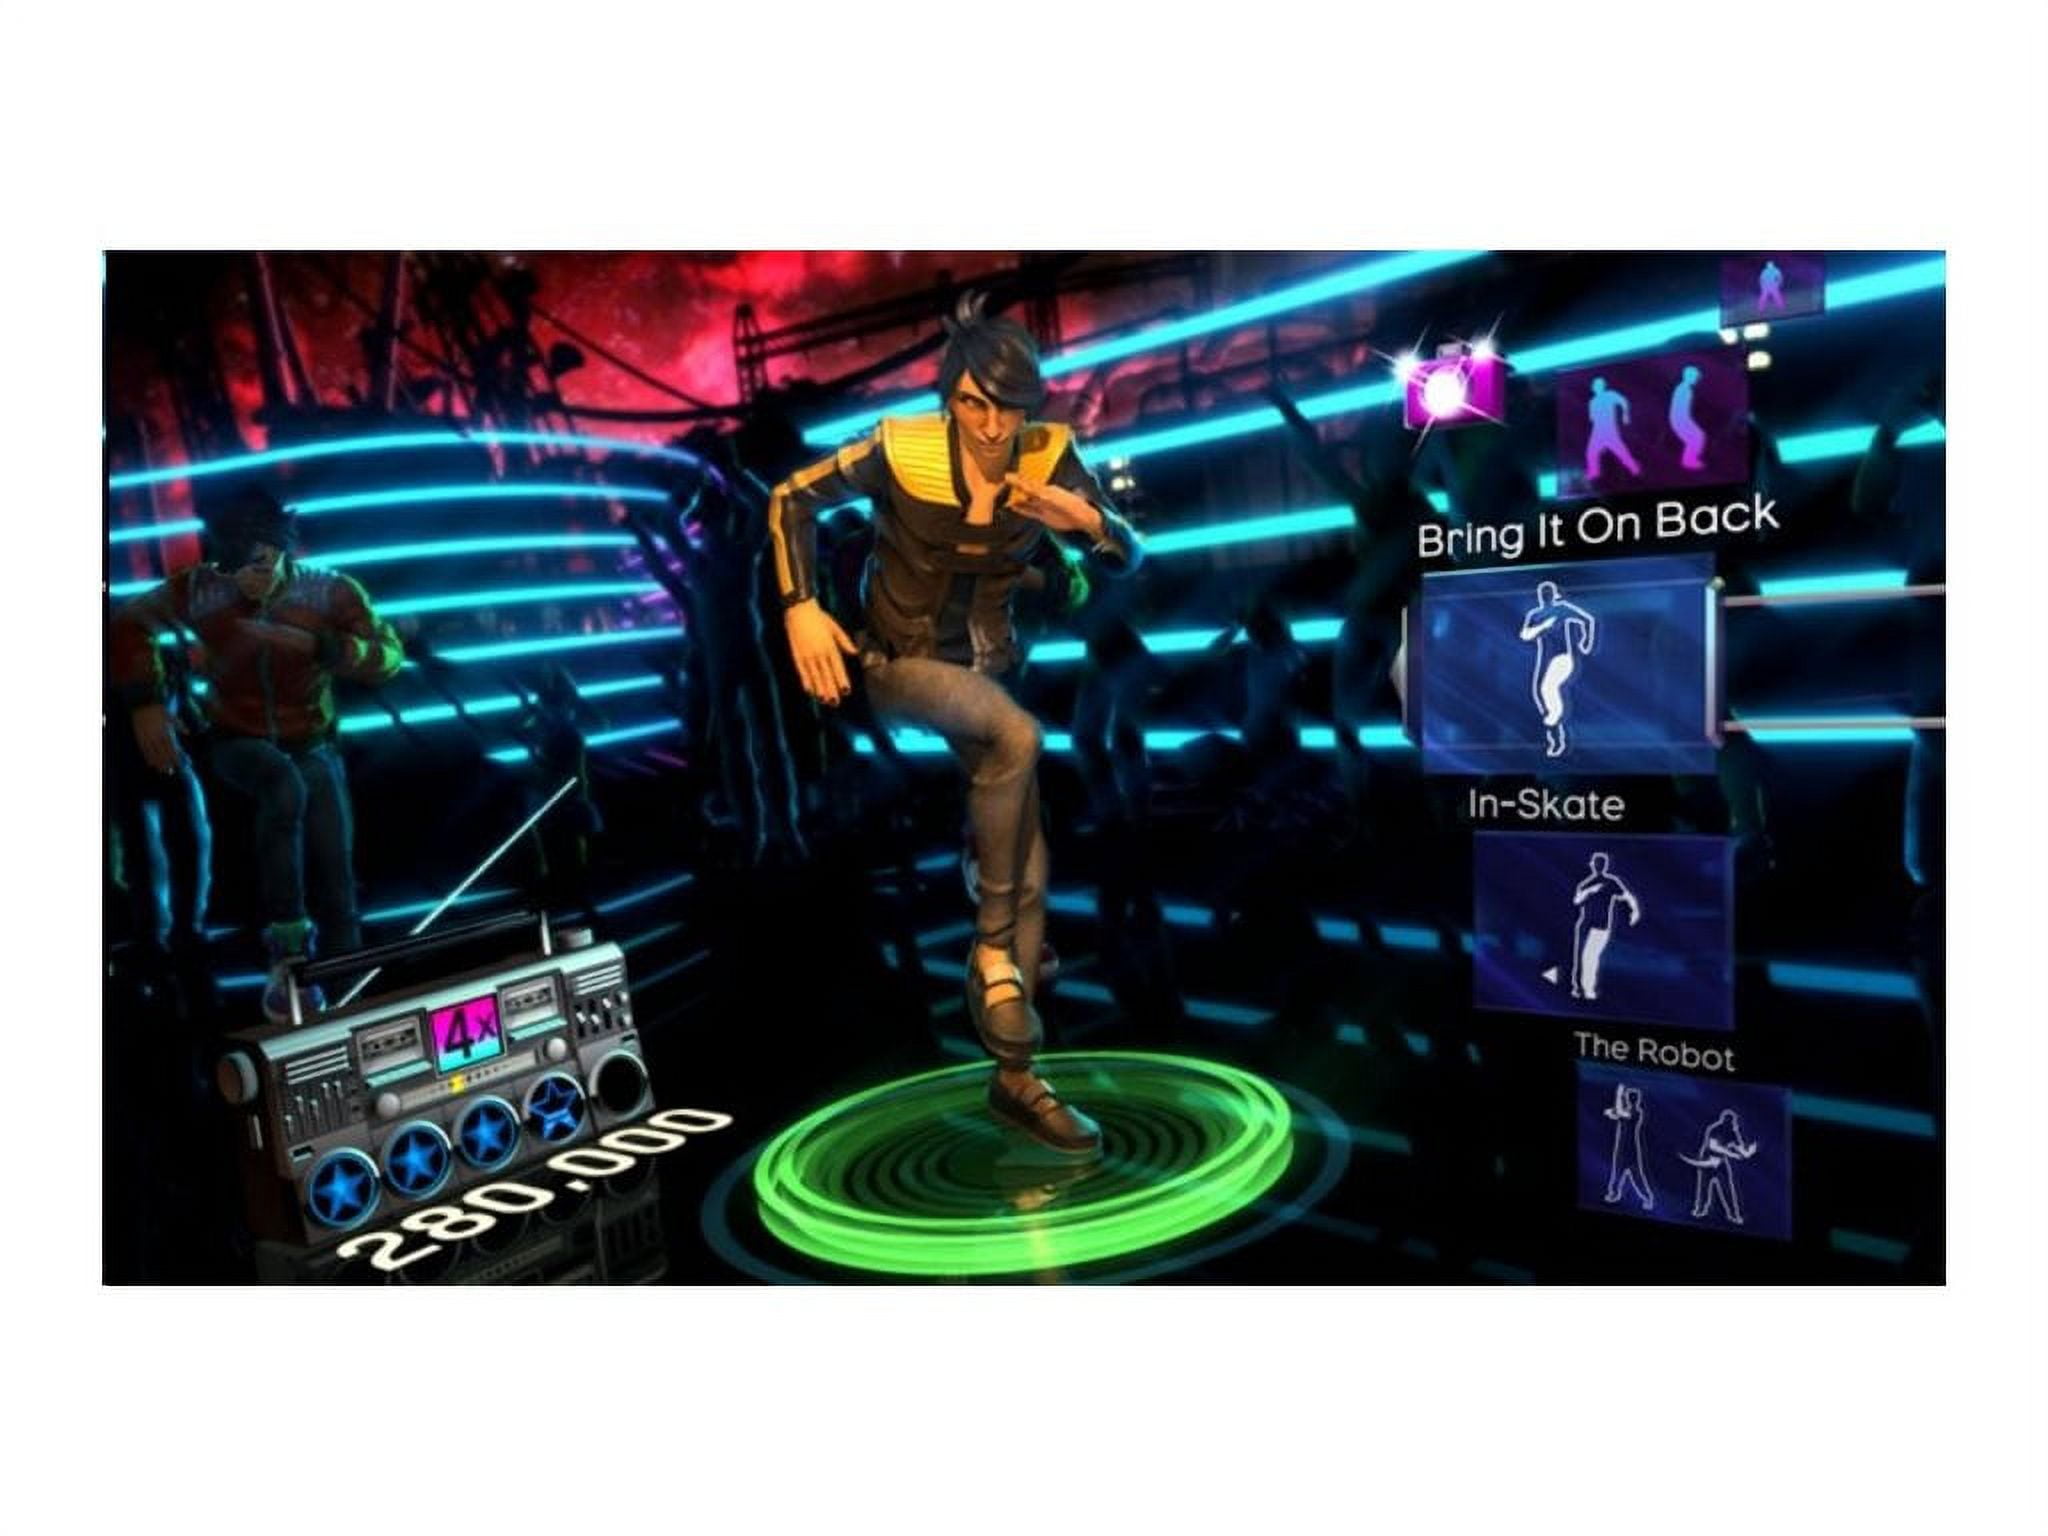 Dance Central 3 para Xbox 360 - Seminovo